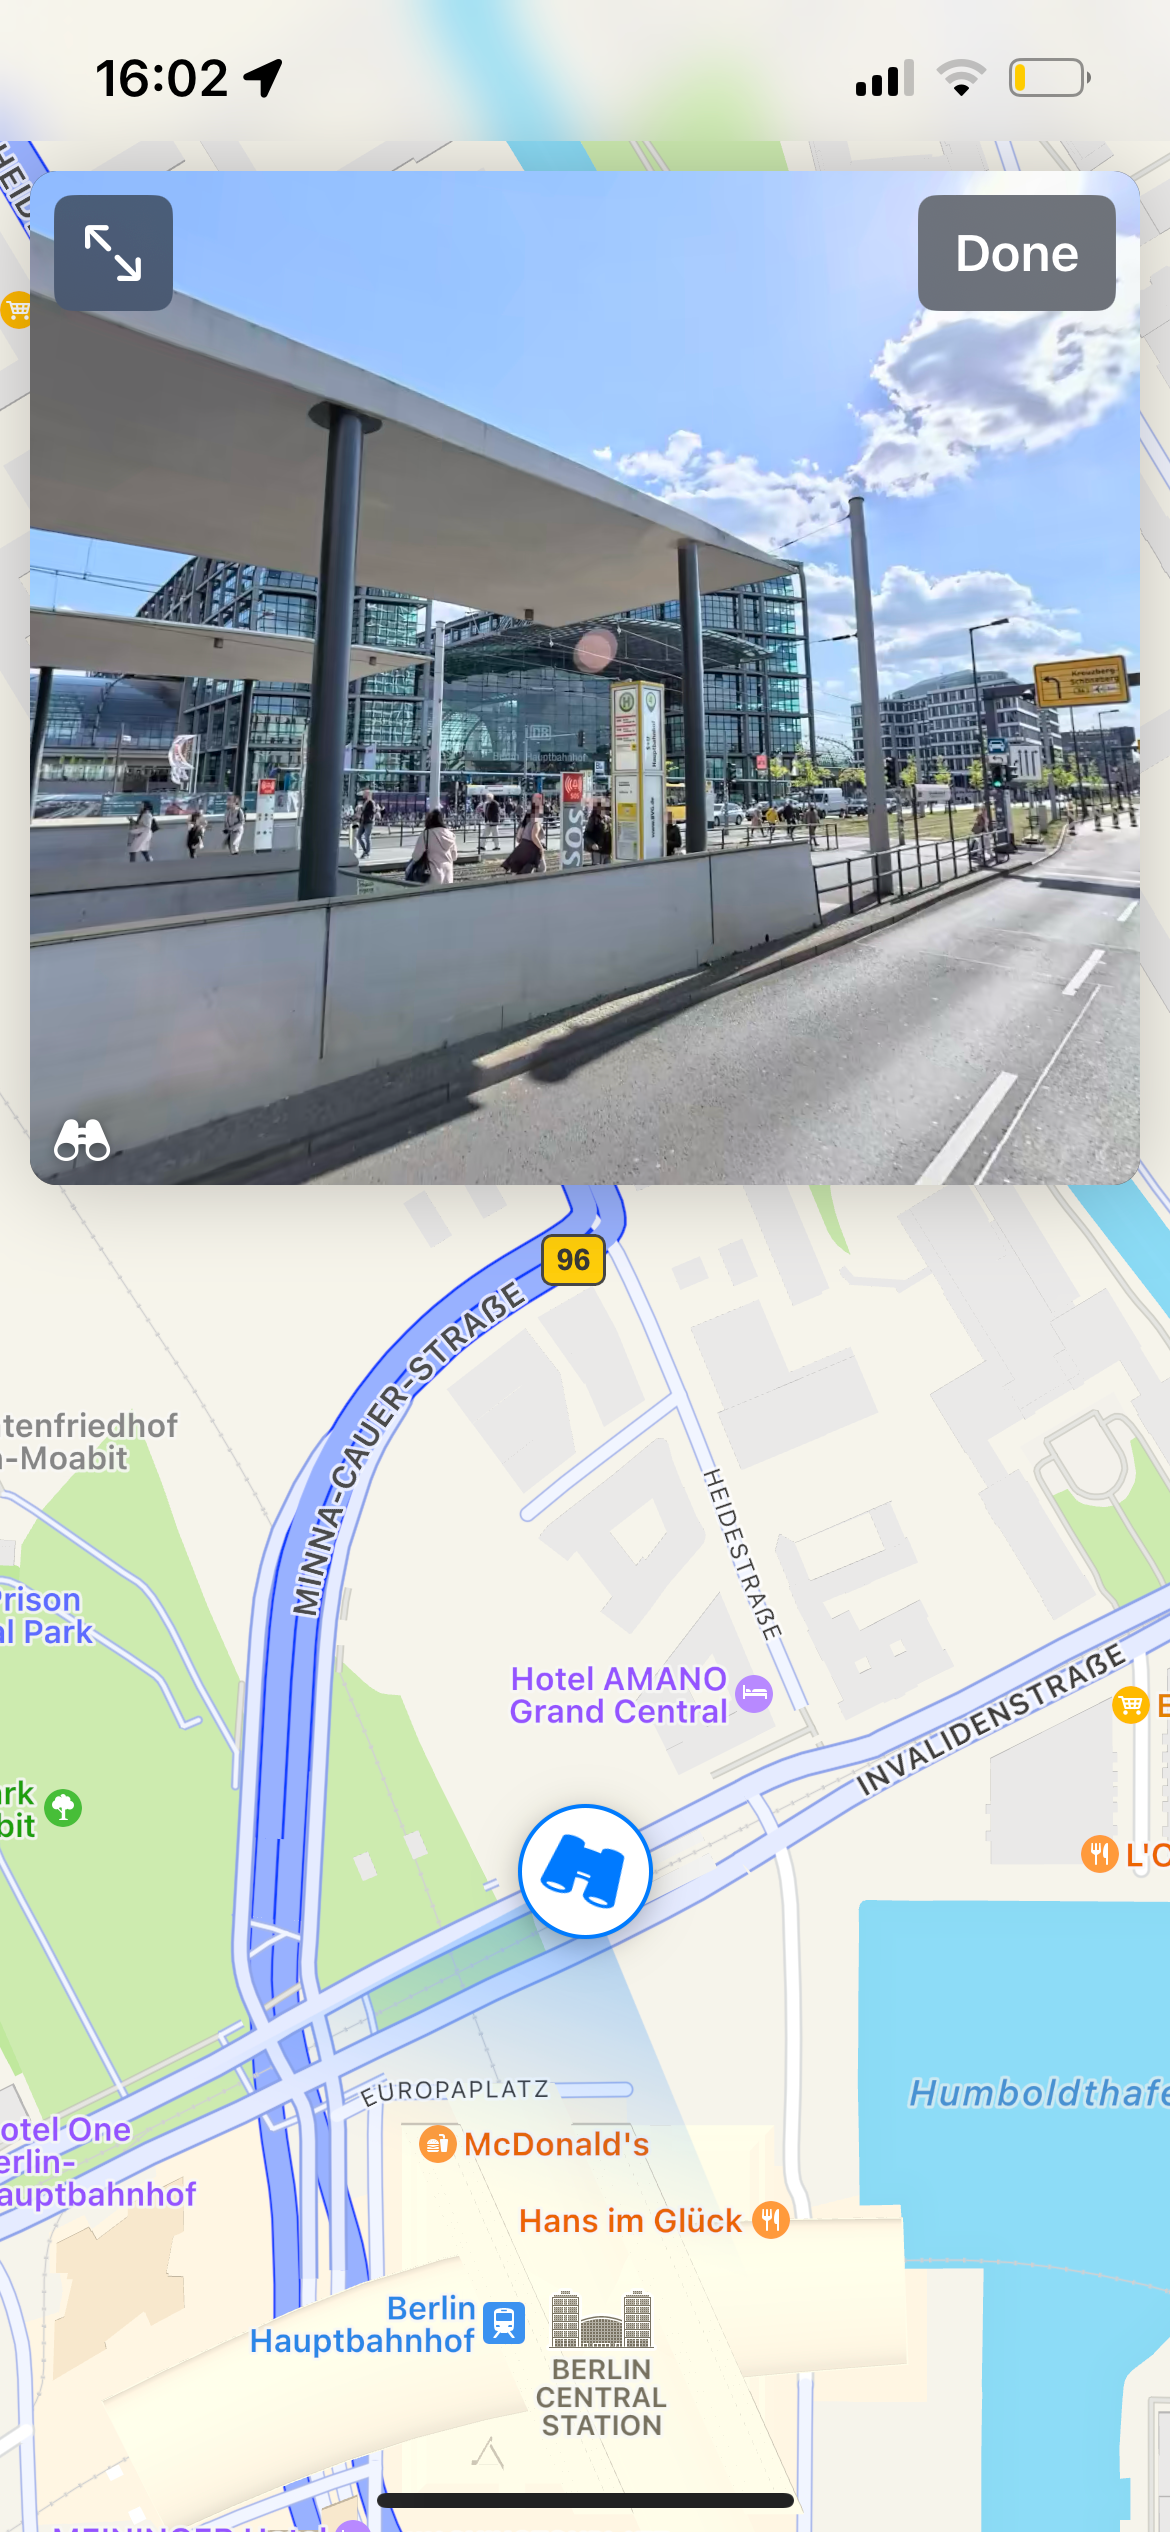 Fitur Apple Maps Look Around menunjukkan gambar stasiun pusat Berlin saat ini dengan stasiun trem di depannya